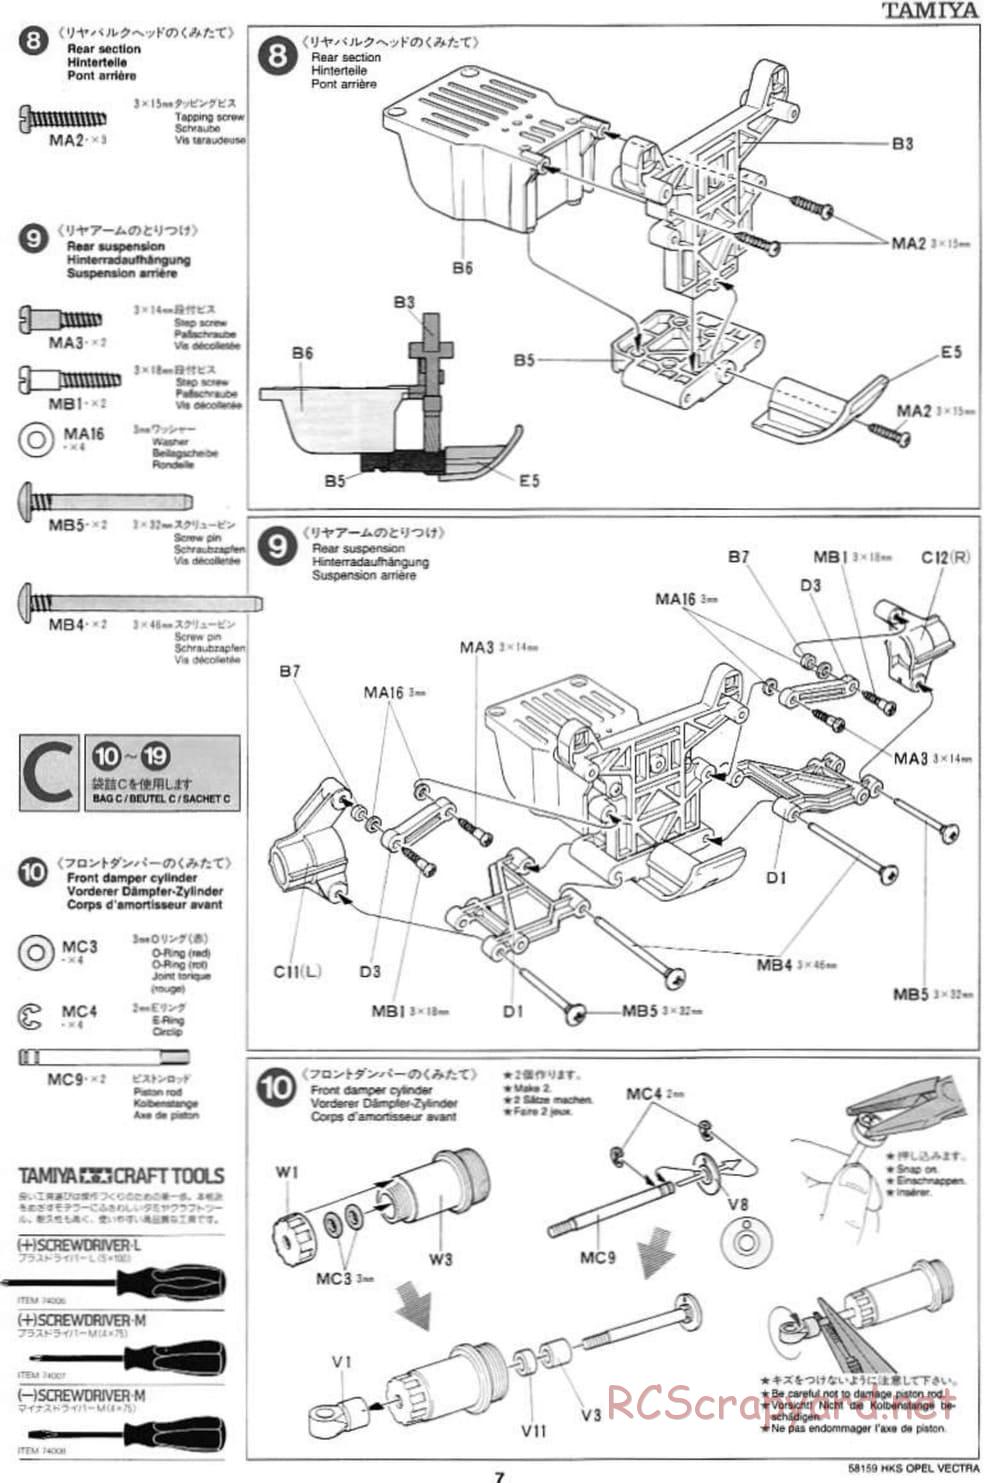 Tamiya - HKS Opel Vectra JTCC - FF-01 Chassis - Manual - Page 7